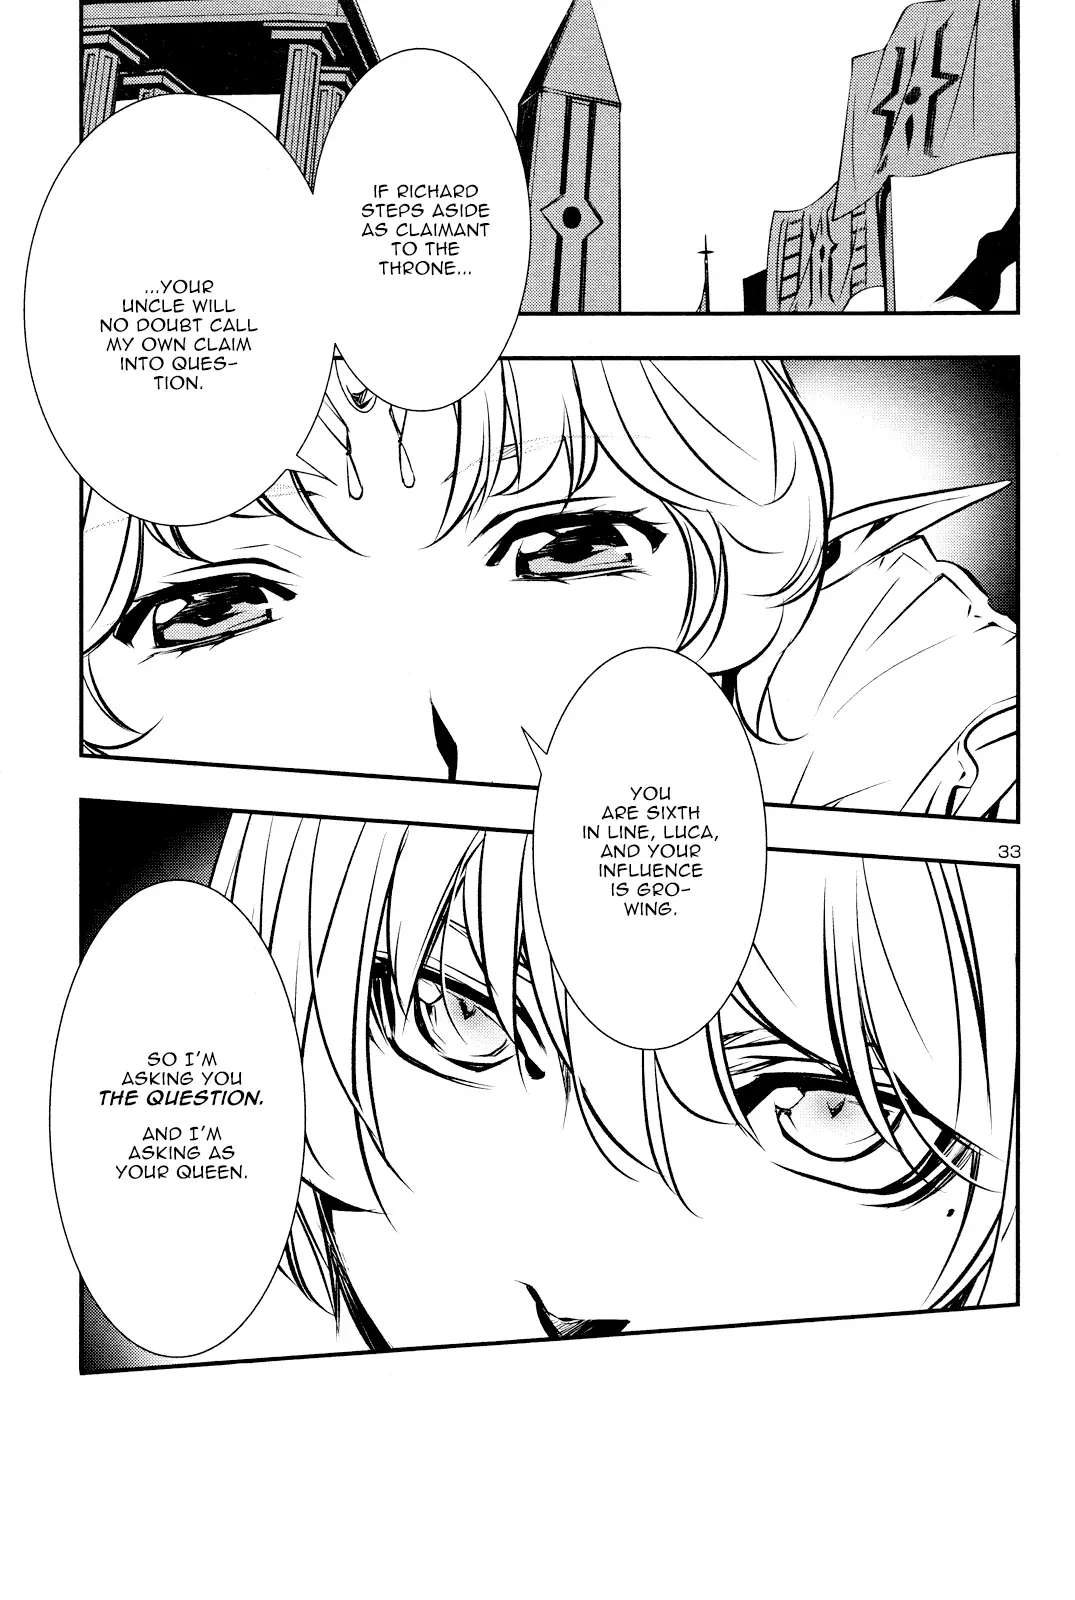 Shinju no Nectar - 32 page 32